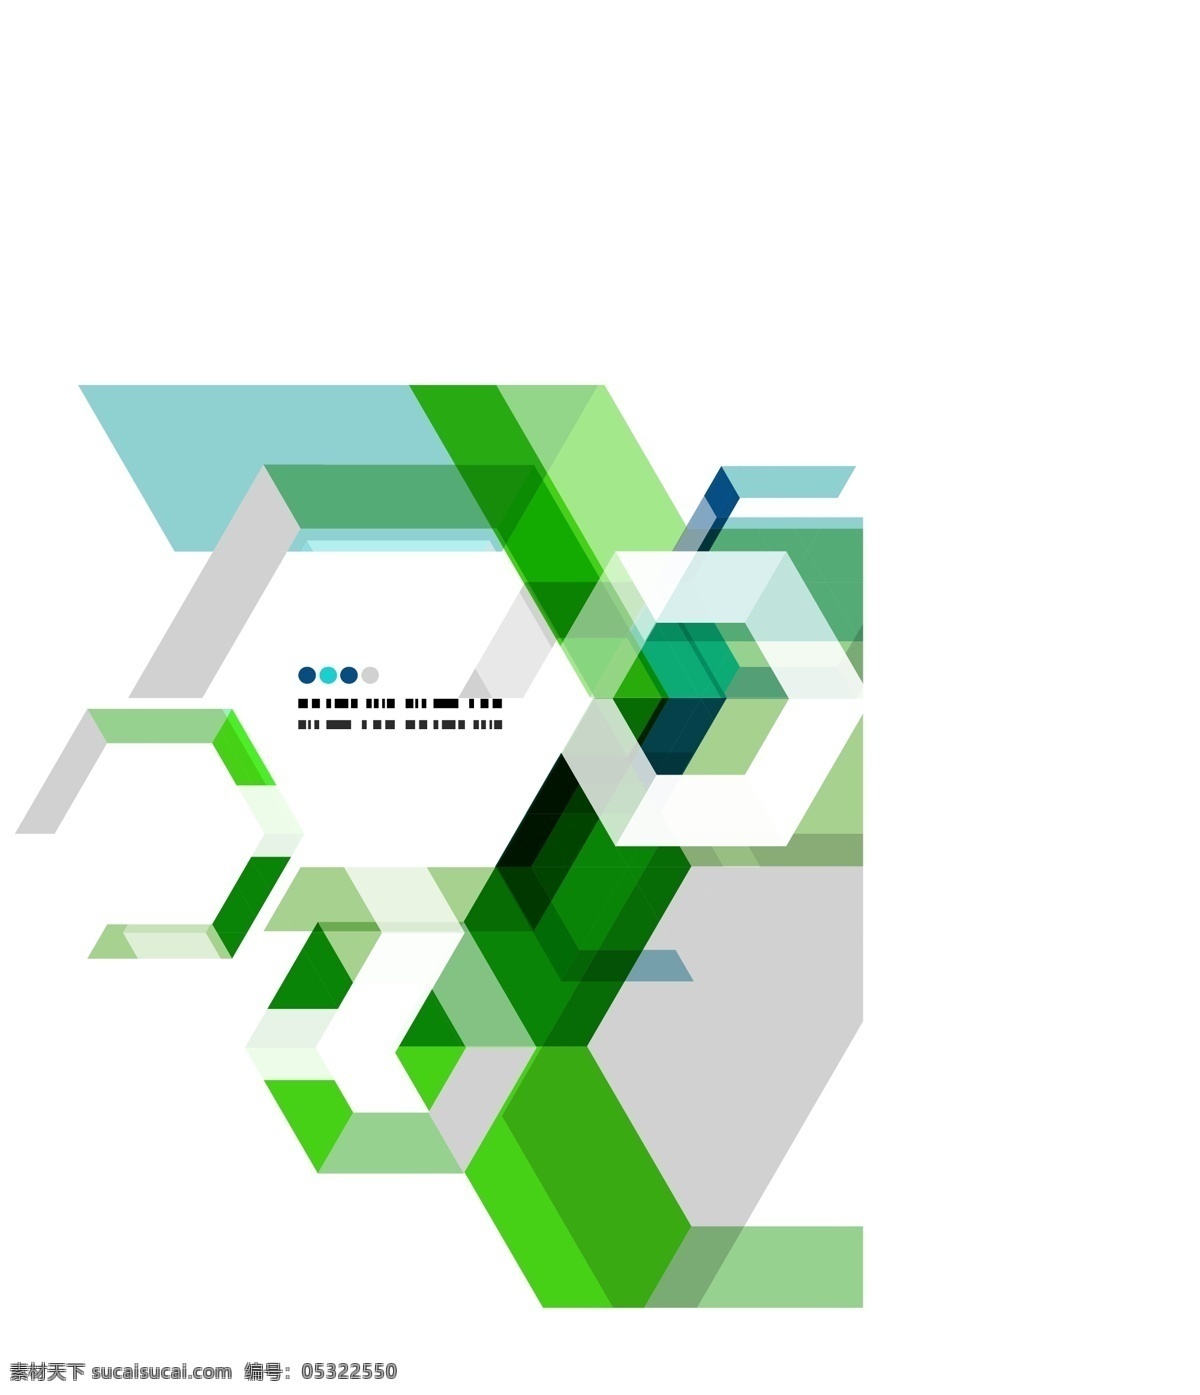 现代 几何 抽象 背景 矢量 布局 材料 广场 几何设计 角 蓝色的 六边形 模板 摘要 艺术 丰富多彩 装饰 时尚 绿色的三角形 线条 图案 形状 夏普 网站 文本 白色的 现代的 矢量图